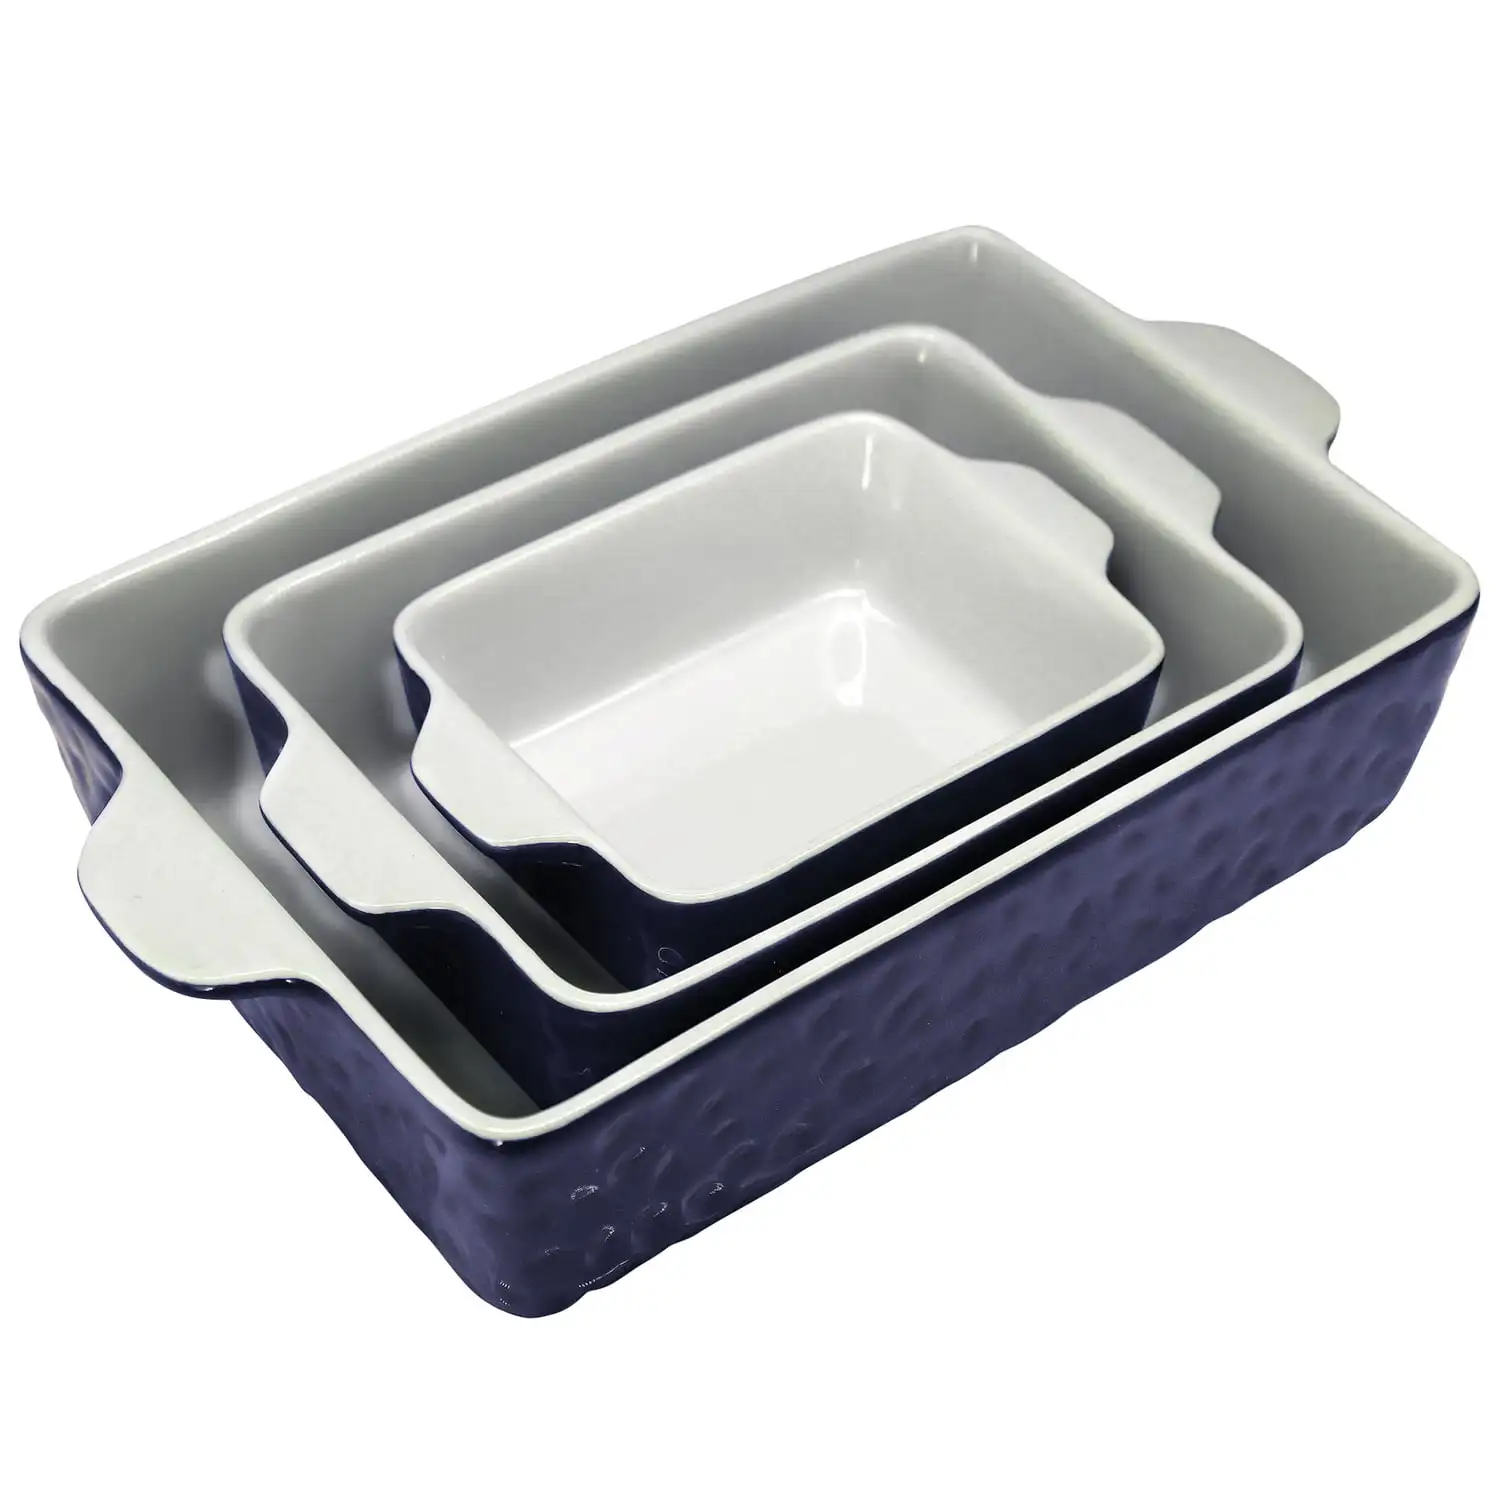 

Nutri Chef 3-Piece Nonstick Ceramic Bakeware PFOA PFOS PTFE Tray Set W/Odor-Free Ceramic